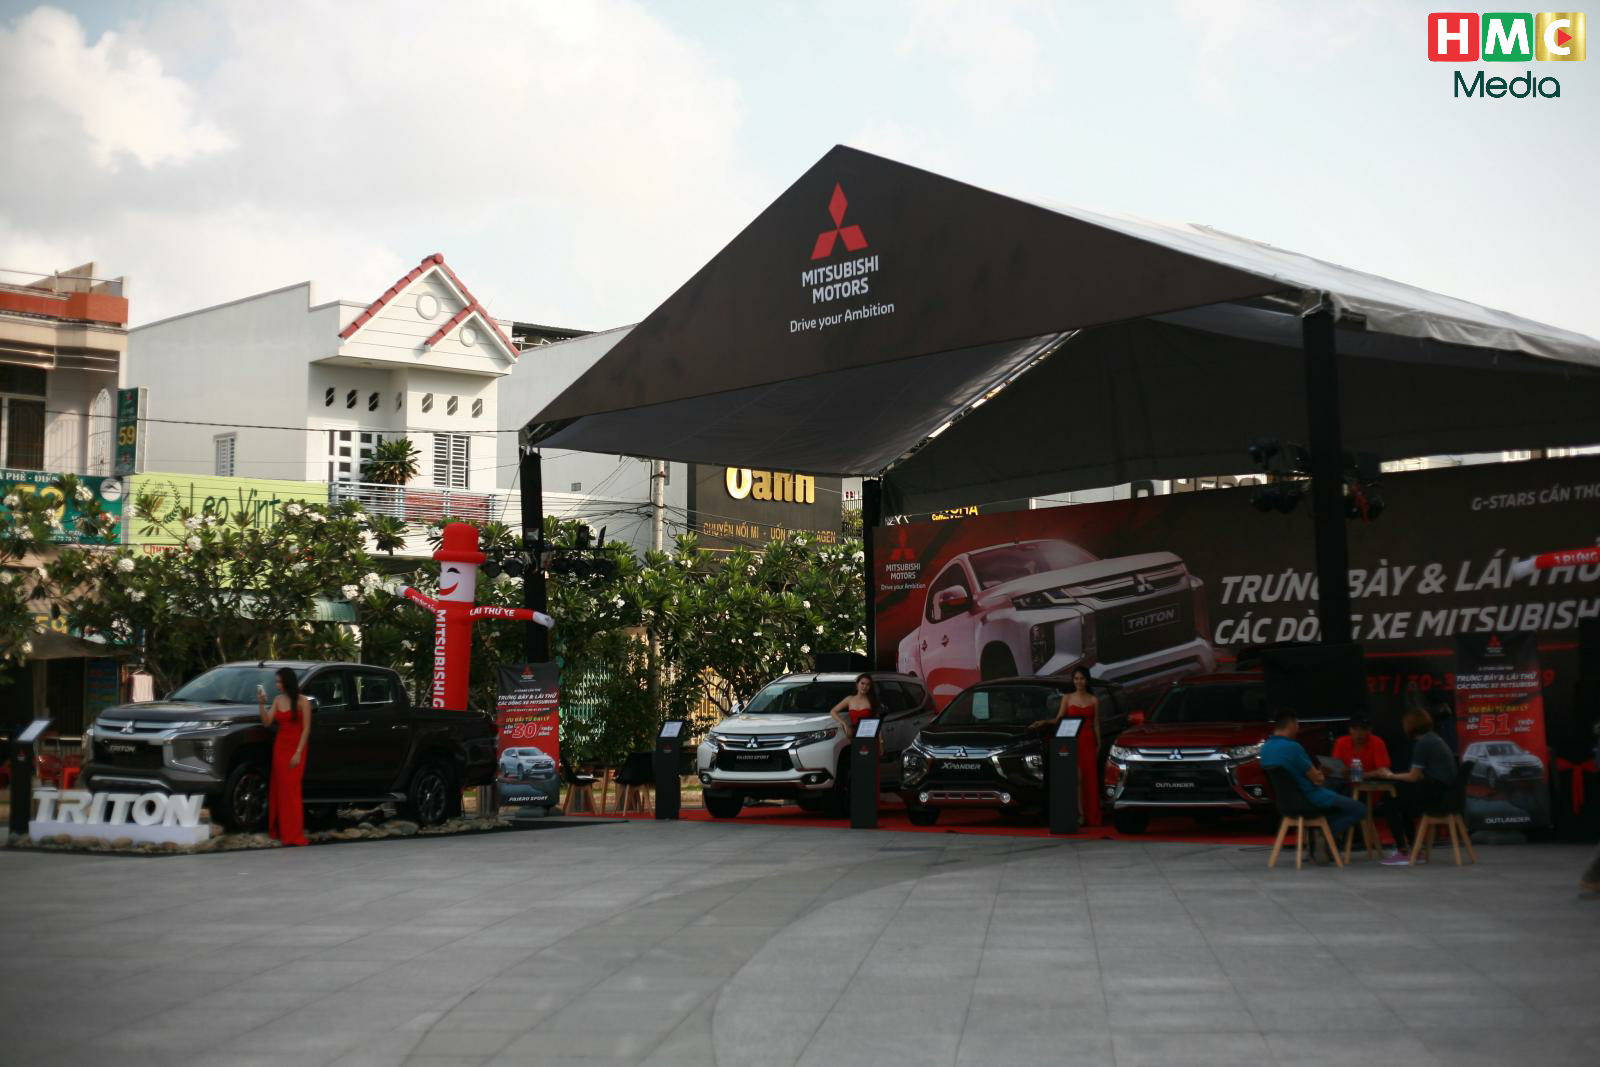 Chuỗi sự kiện trưng bày và lái thử xe Mitsubishi